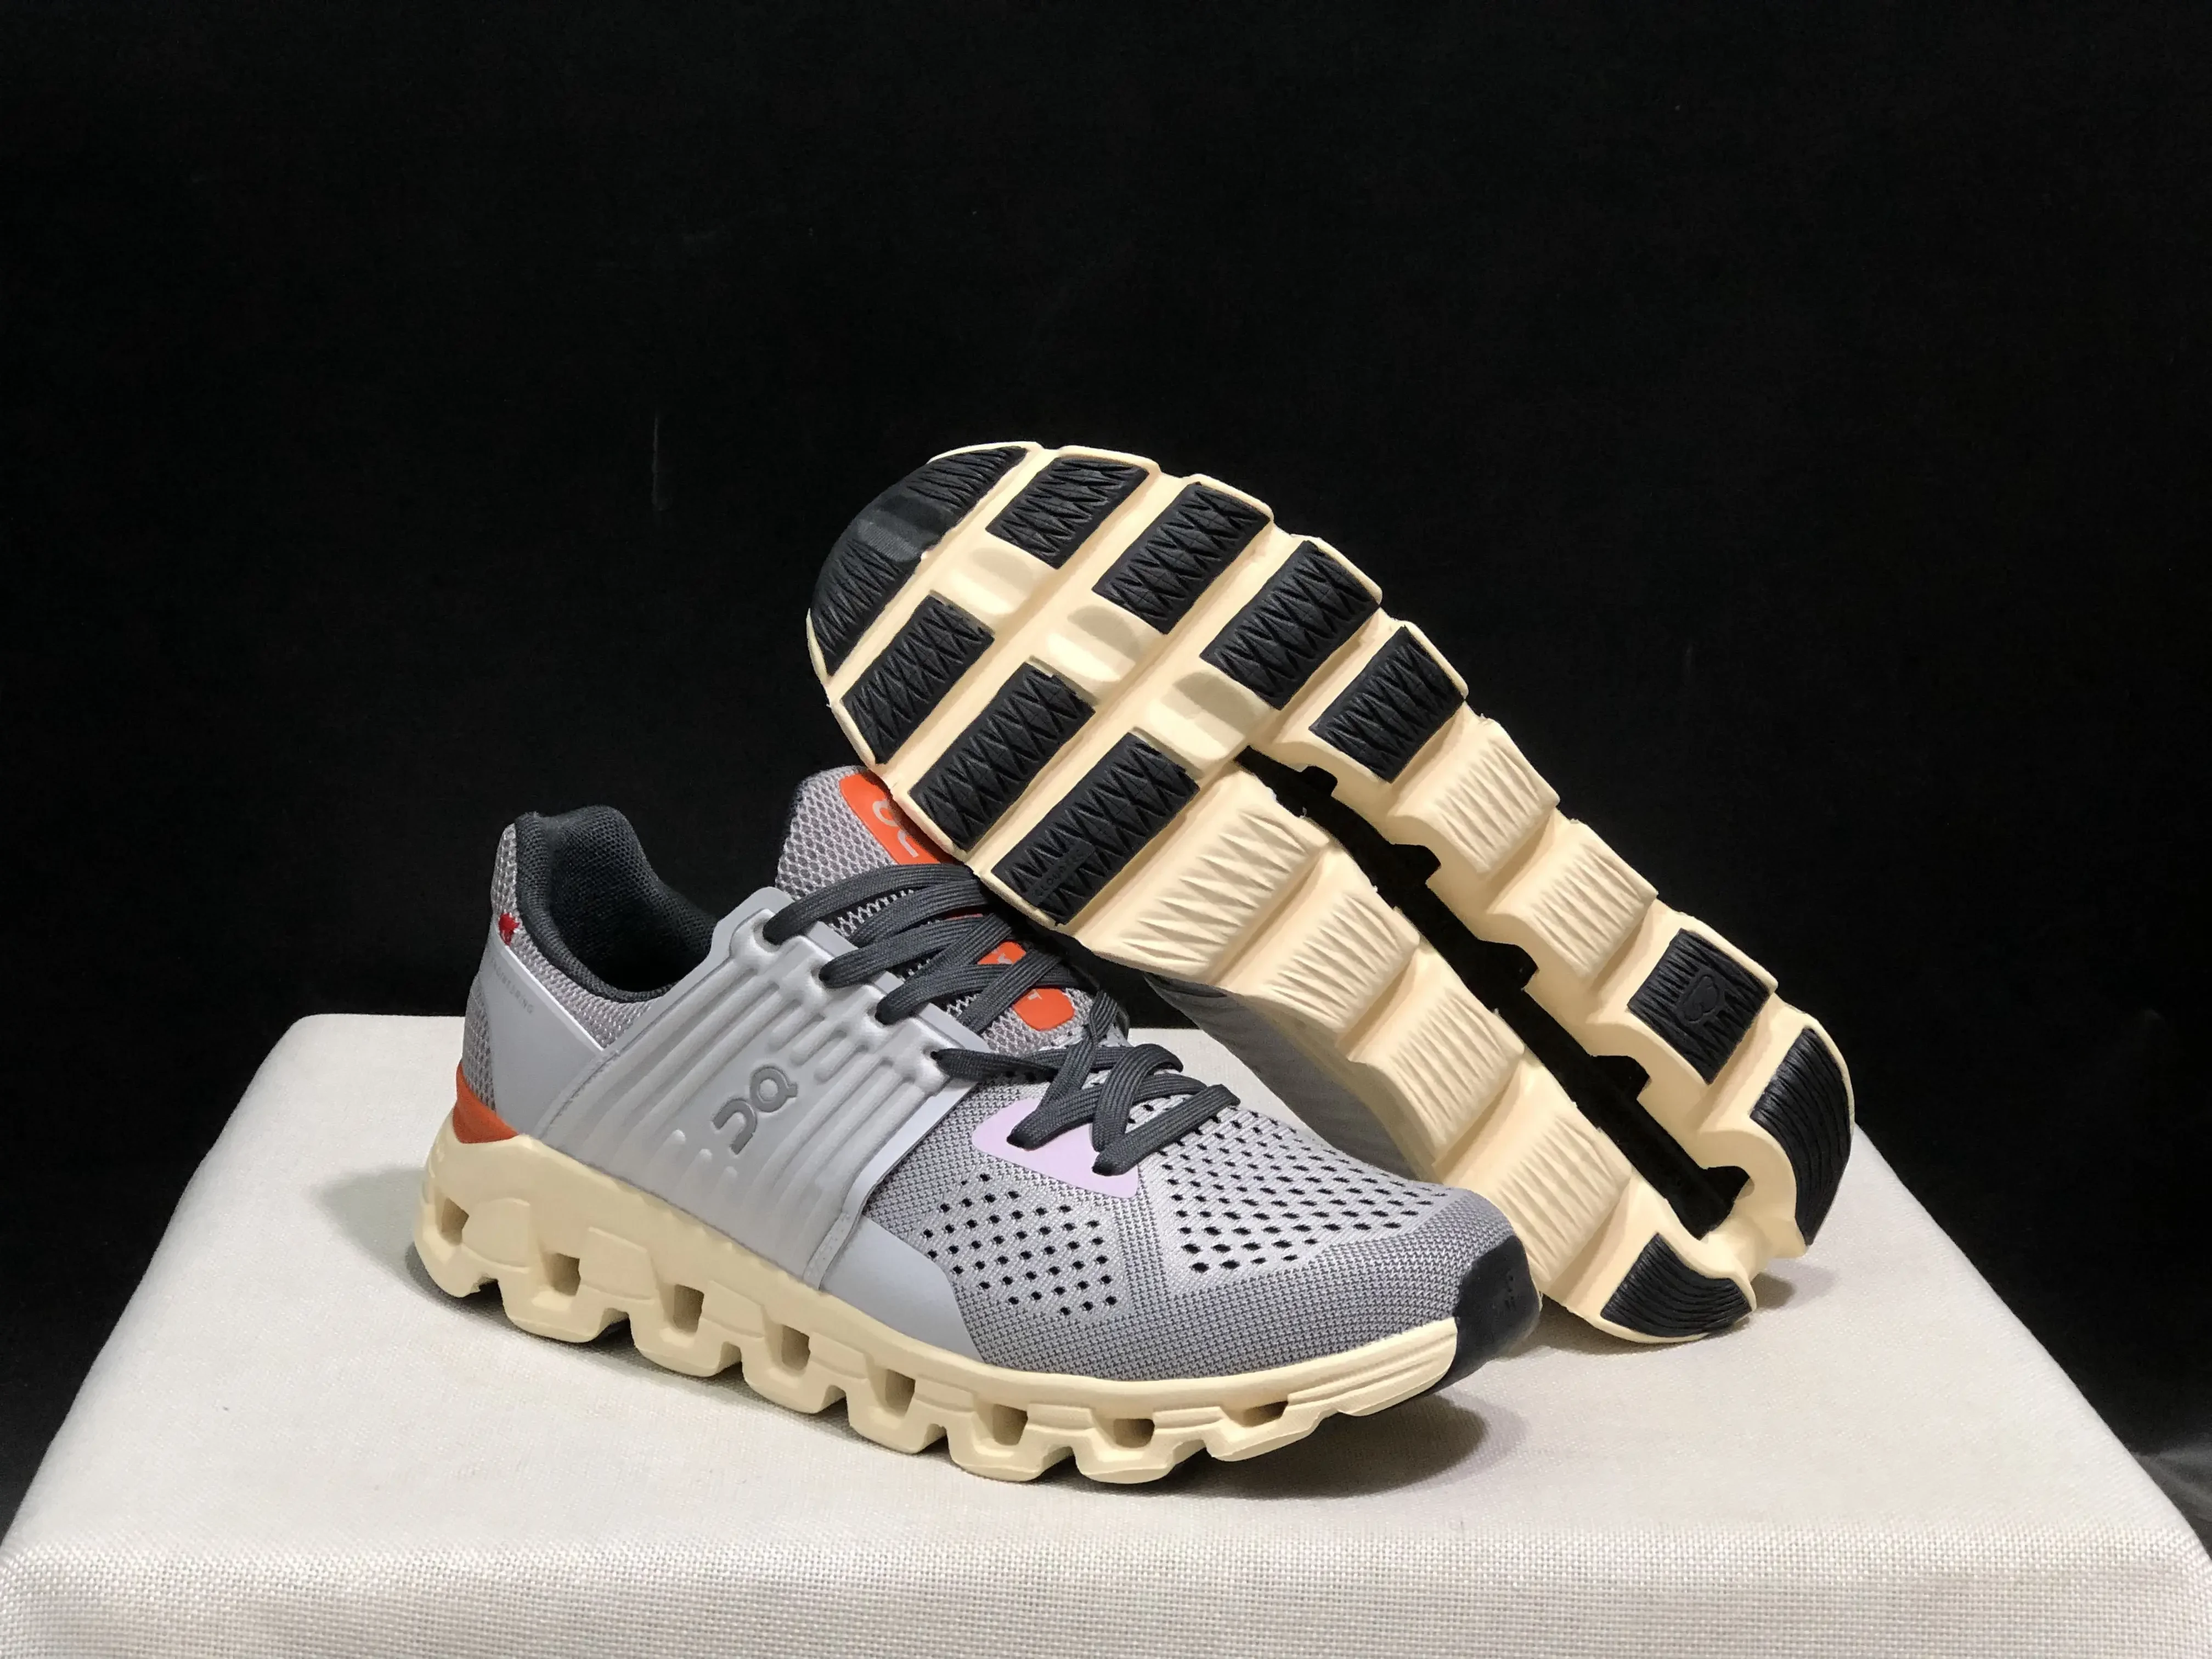 

Оригинальные новые спортивные женские и мужские беговые кроссовки на Cloudswift 3, дышащие противоскользящие амортизирующие кроссовки для дорожного спорта, повседневного образа жизни, уличные кроссовки